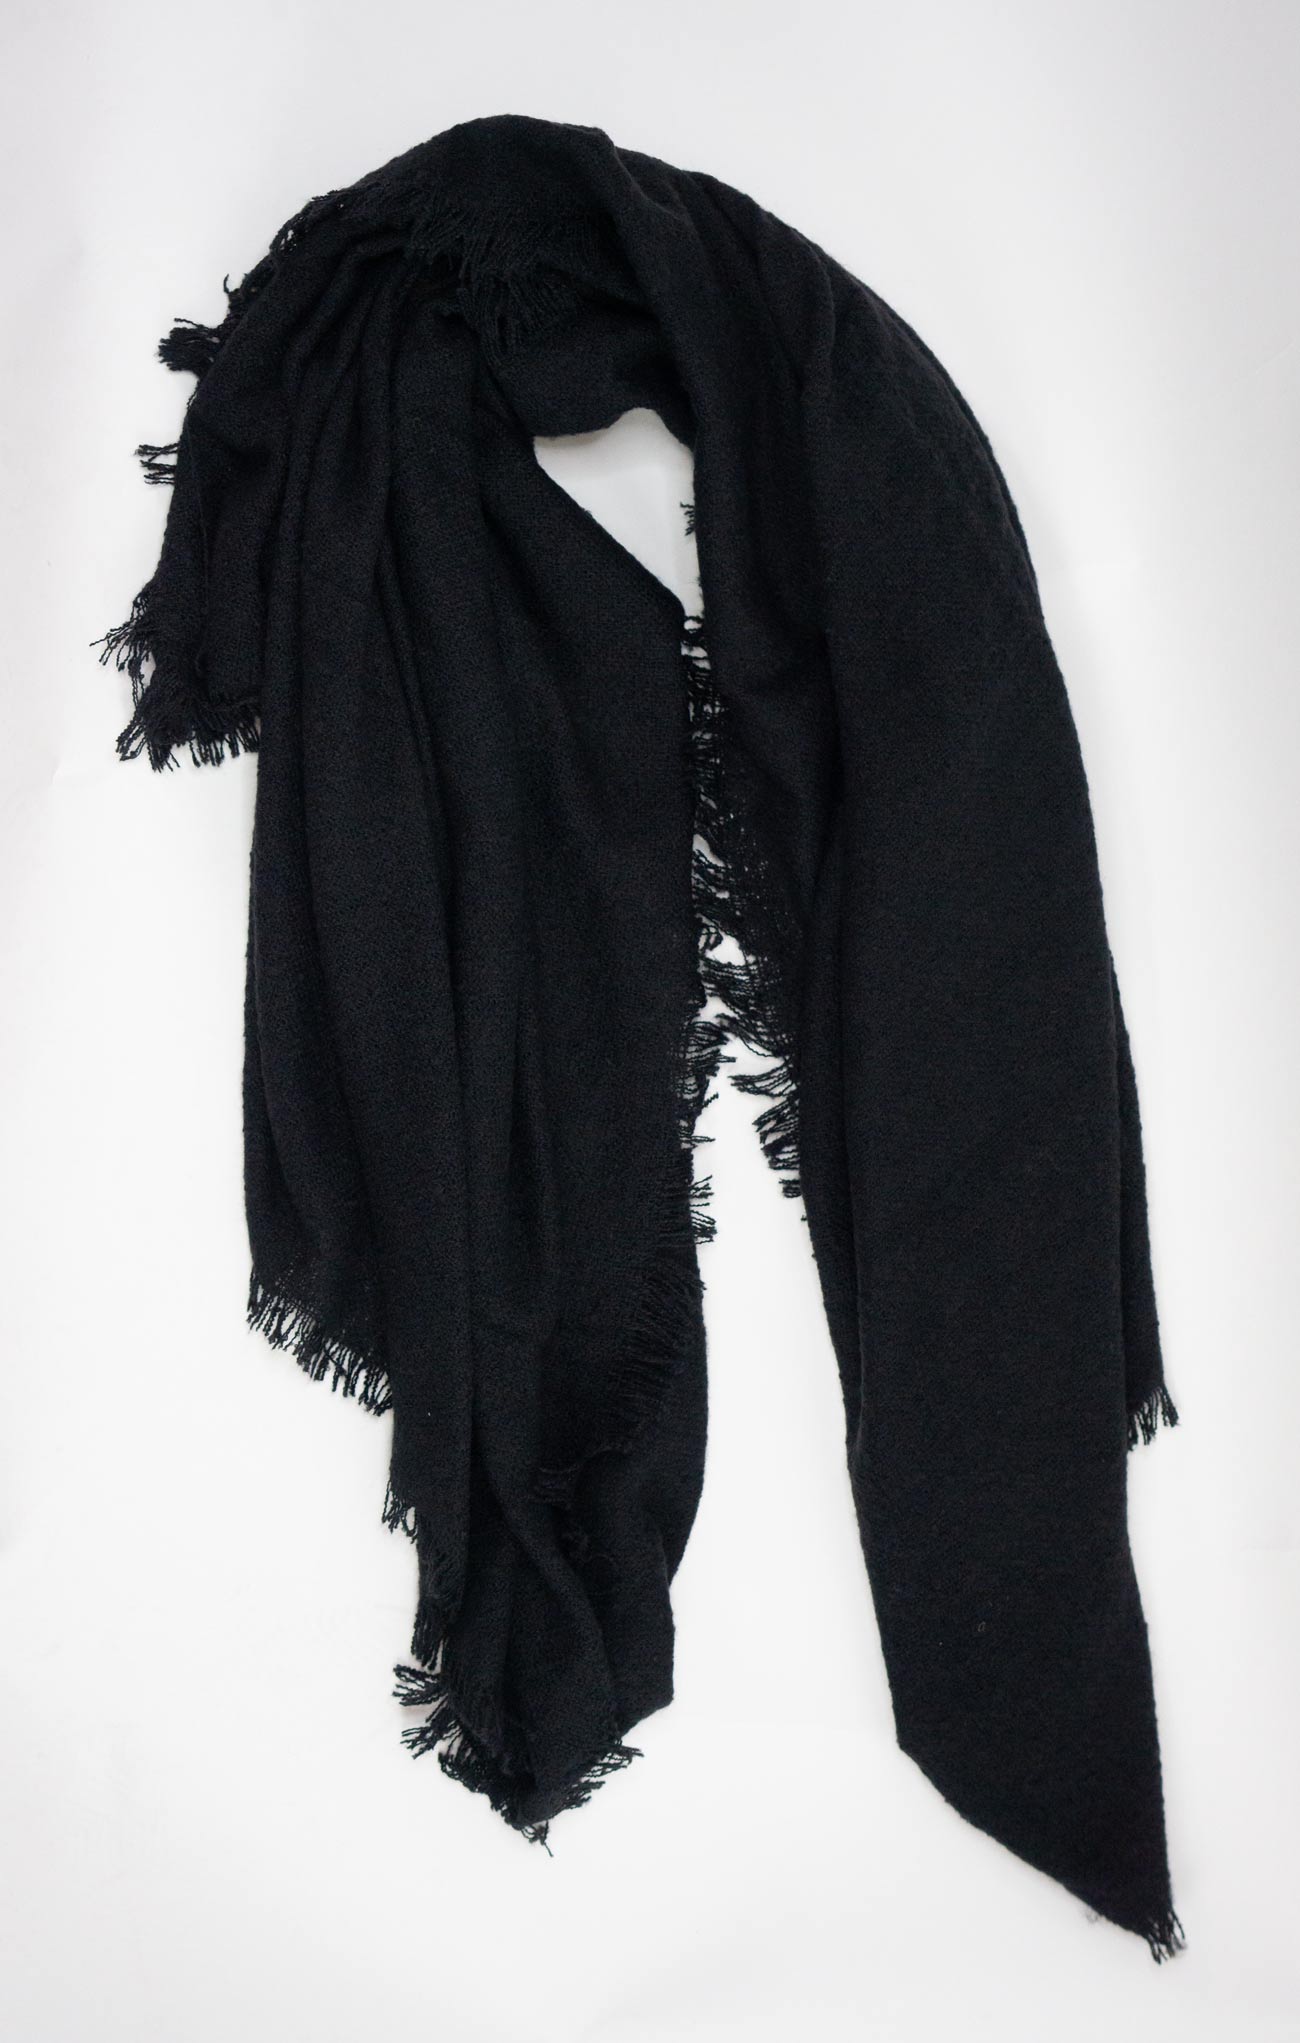 SOLID COLOR SQUARE BLANKET SCARF-black,blanket scarf,frayed edges